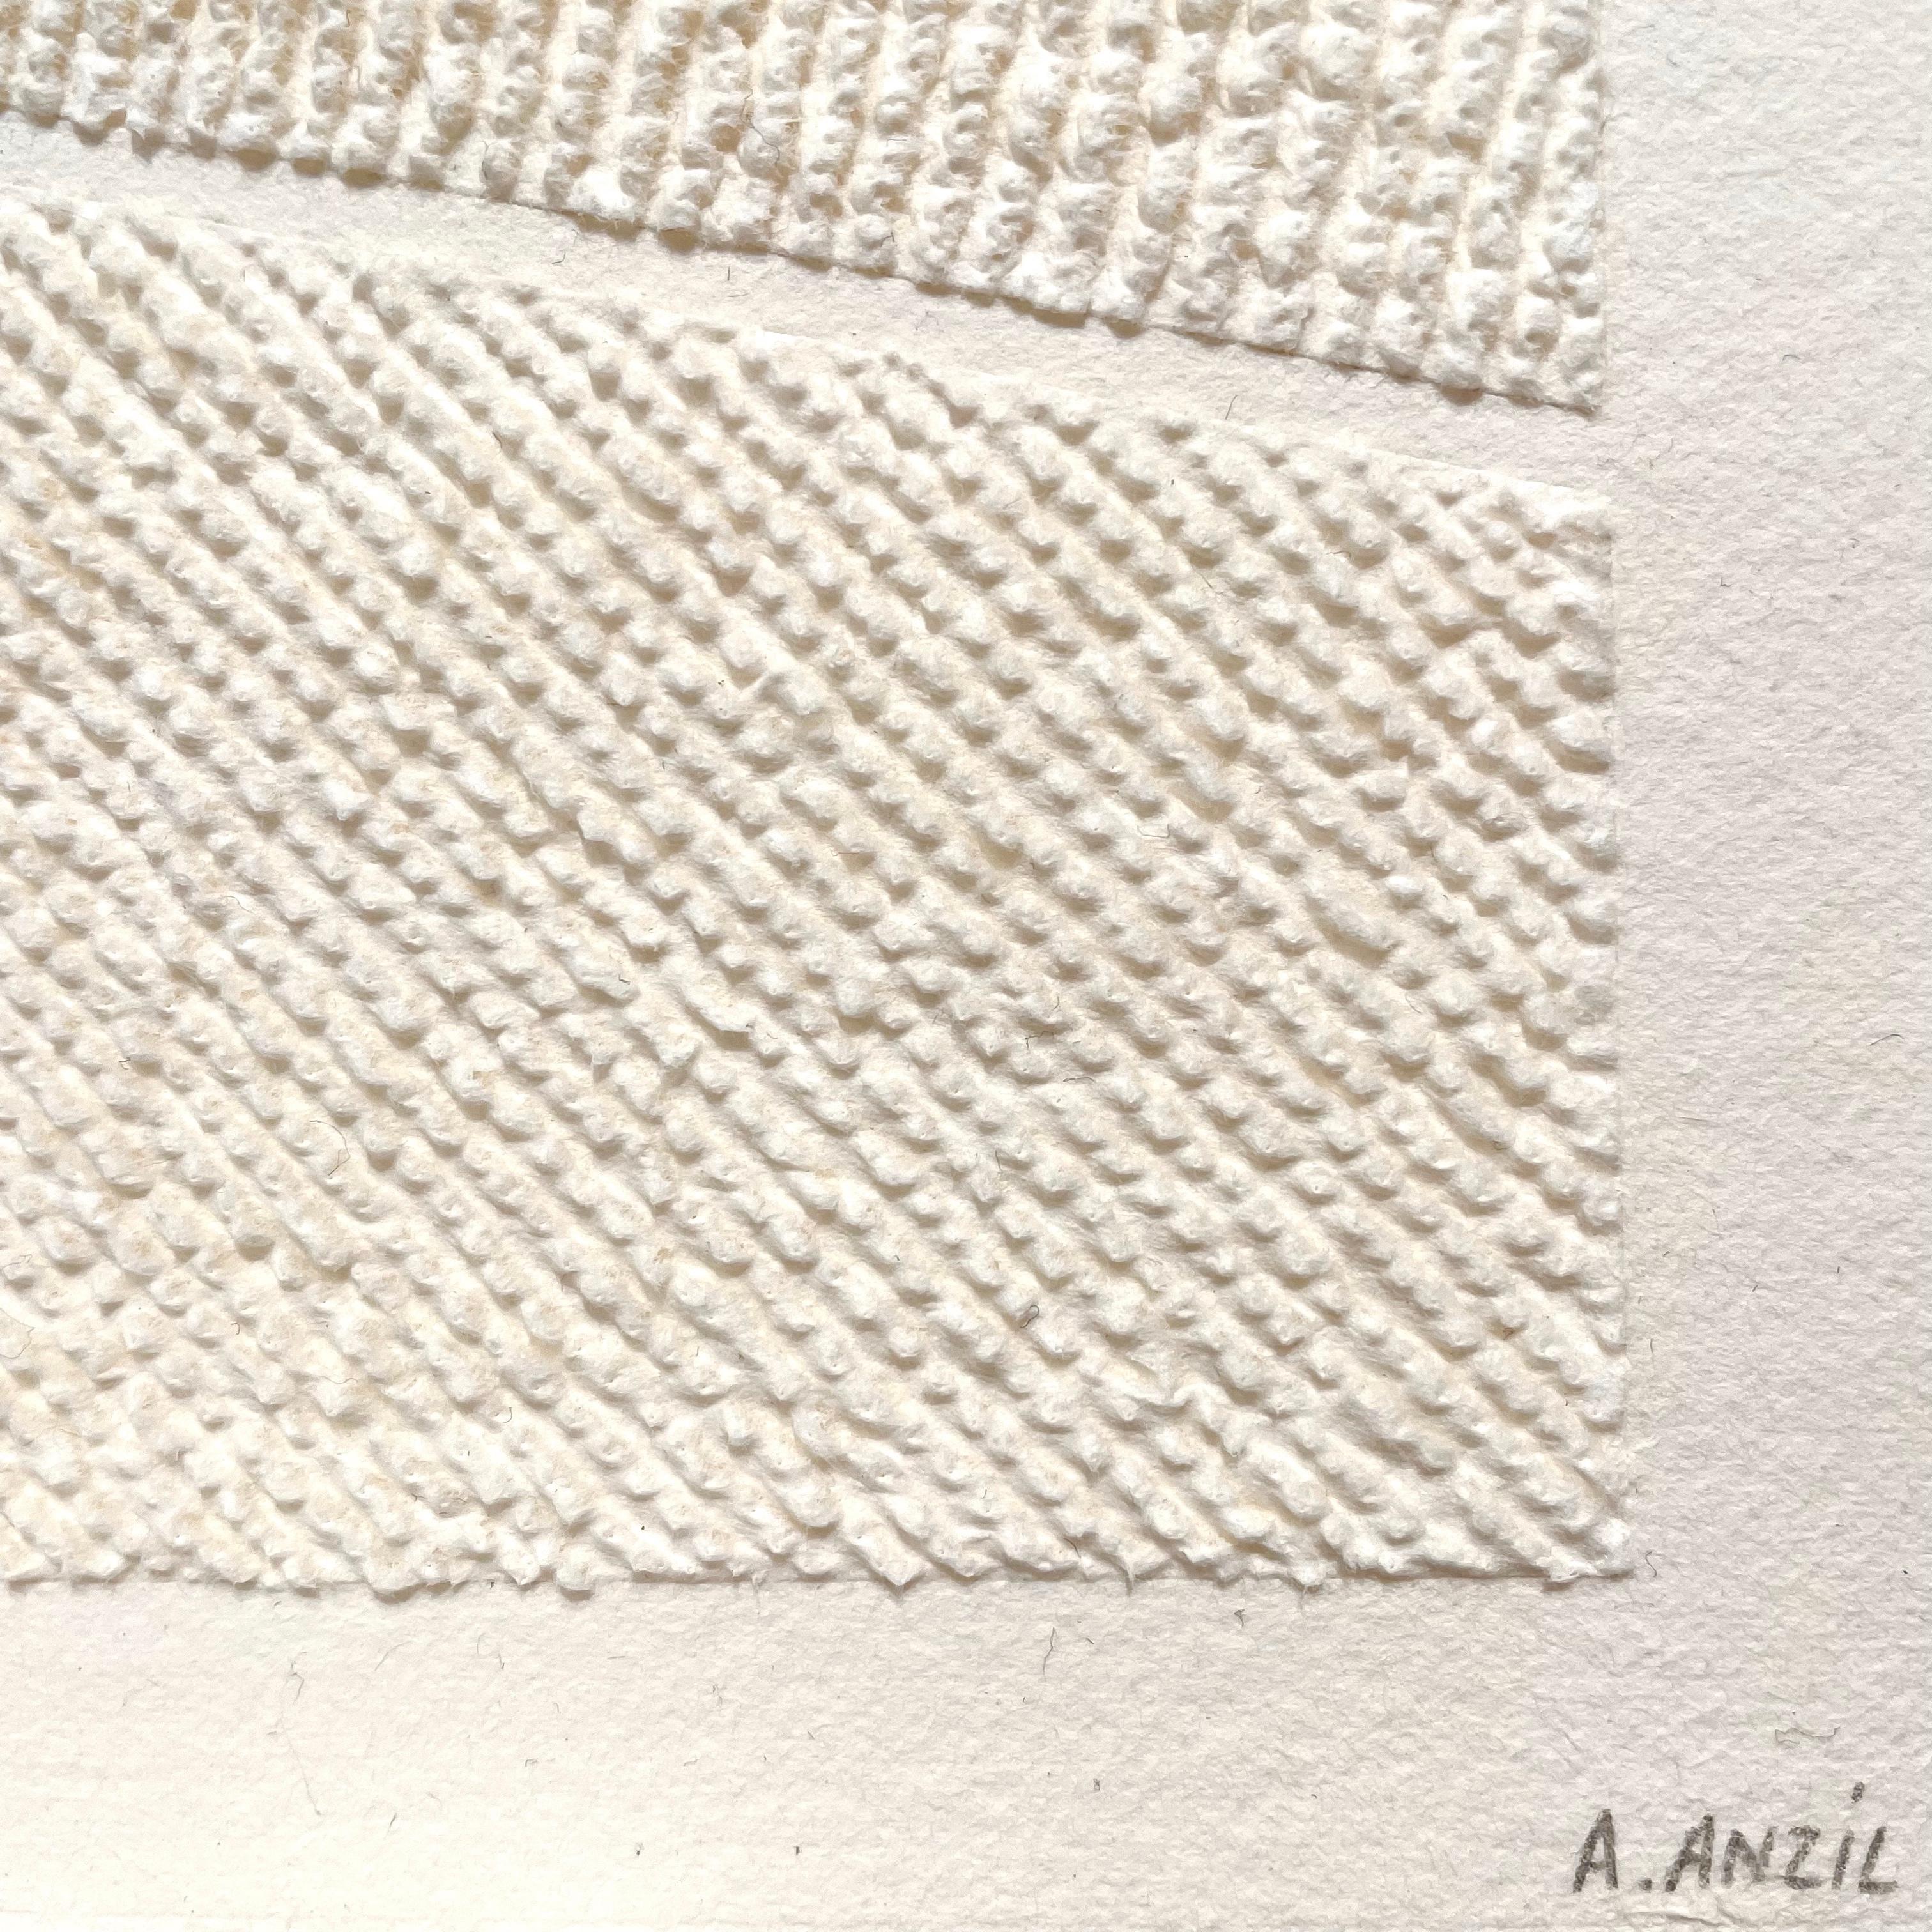 Finesse und Zartheit kennzeichnen die künstlerische Praxis von Antonin Anzil am besten. Mit einem scharfen Werkzeug zieht der Künstler die Fasern des Papiers vorsichtig von der Vorderseite her auf und lässt so ein dreidimensionales Relief entstehen,